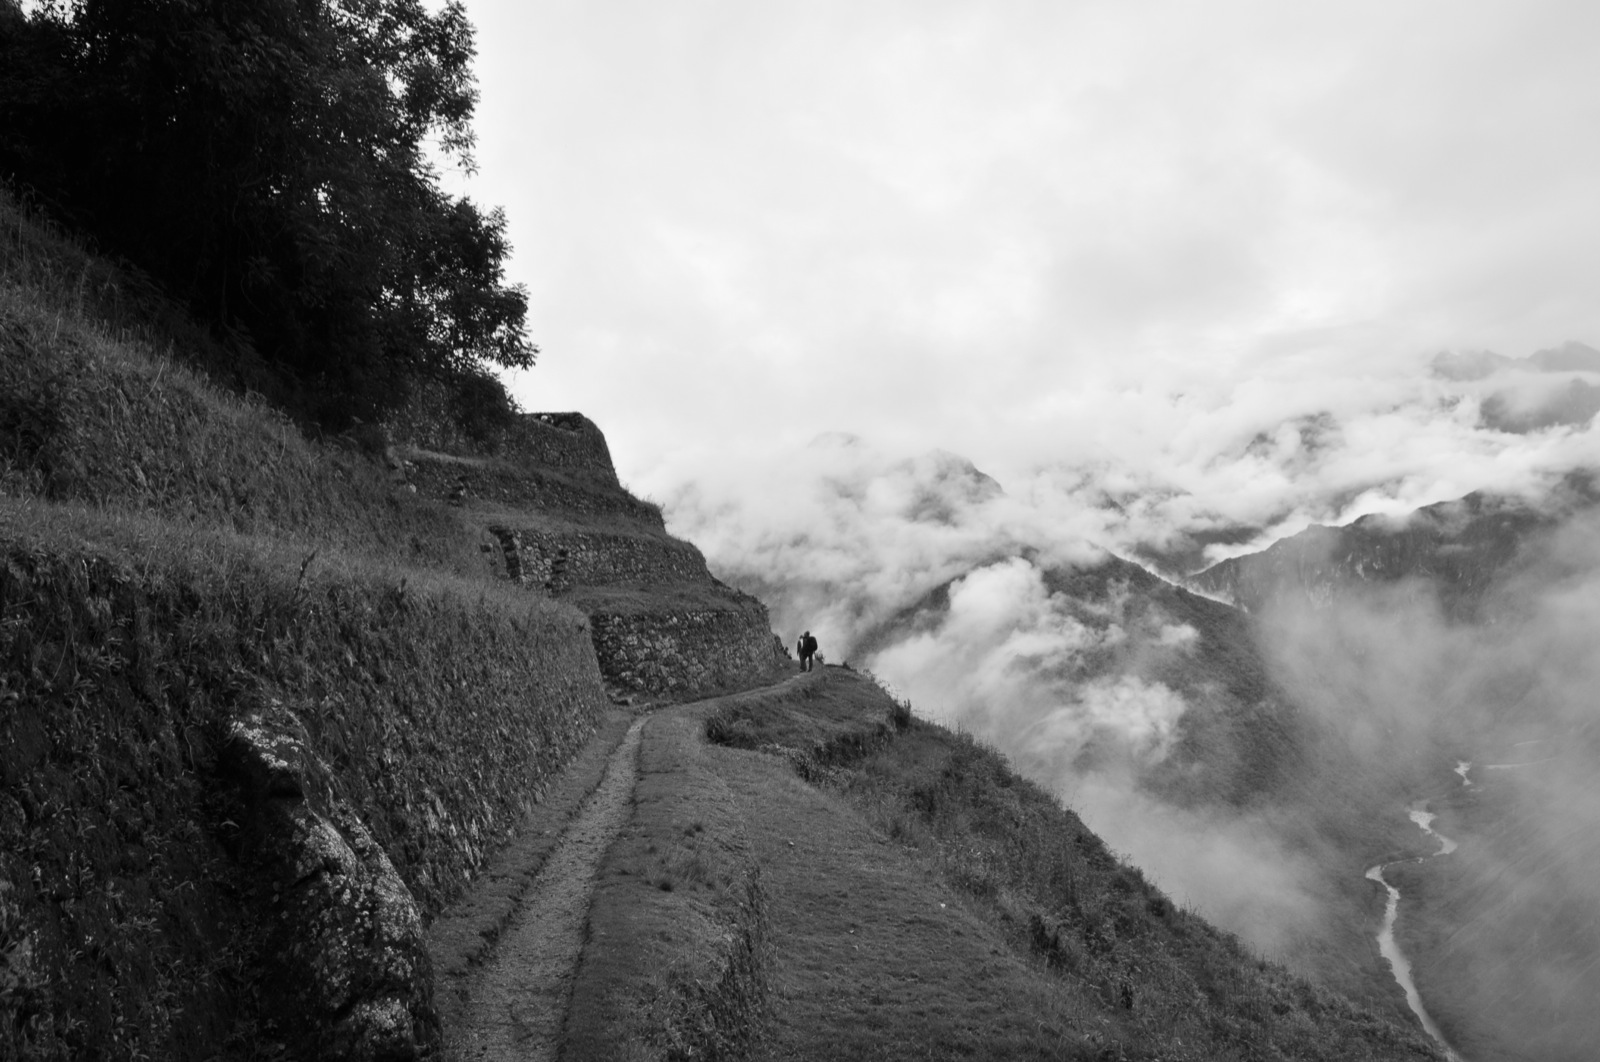 Machu_Picchu059.JPG